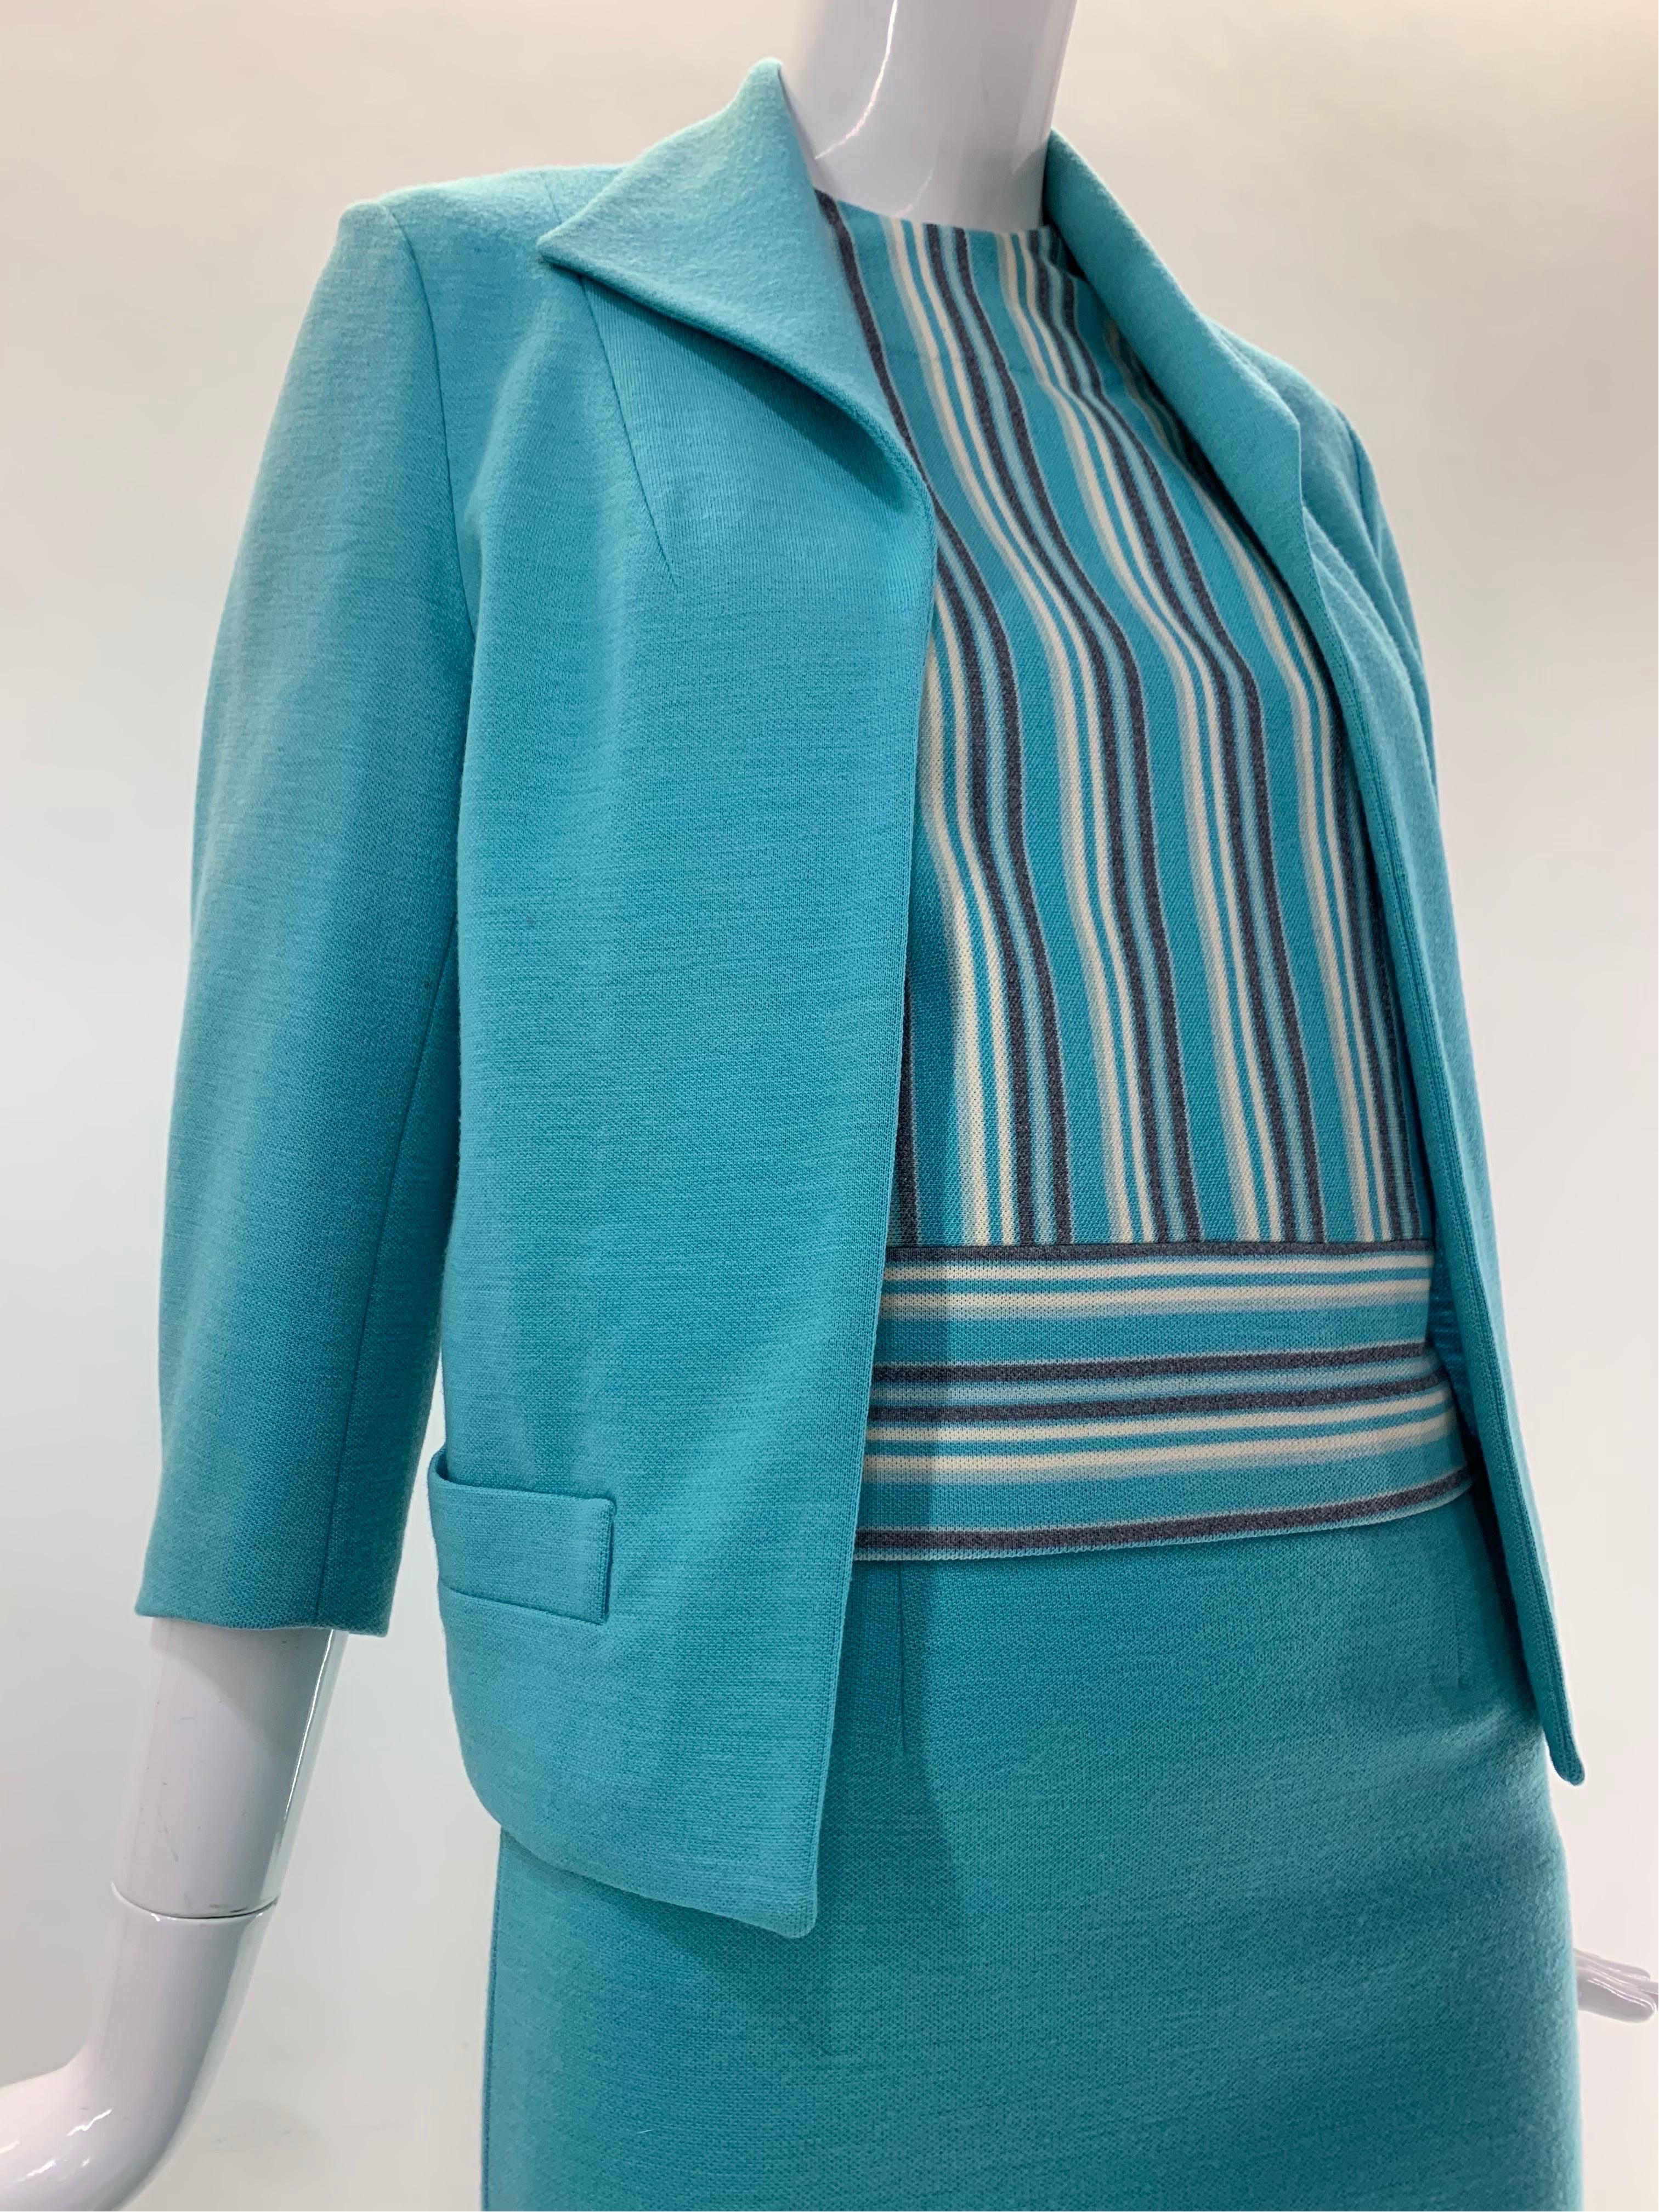 Ein schicker und ordentlicher 1960er Promenade - Holland türkisfarbener, doppelt gestrickter 3-teiliger Rockanzug aus Wolle: Jacke und Rock in passendem Unifarbton, die Bluse ist ein schmeichelhafter schmaler Längsstreifen. Die Jacke ist einfach